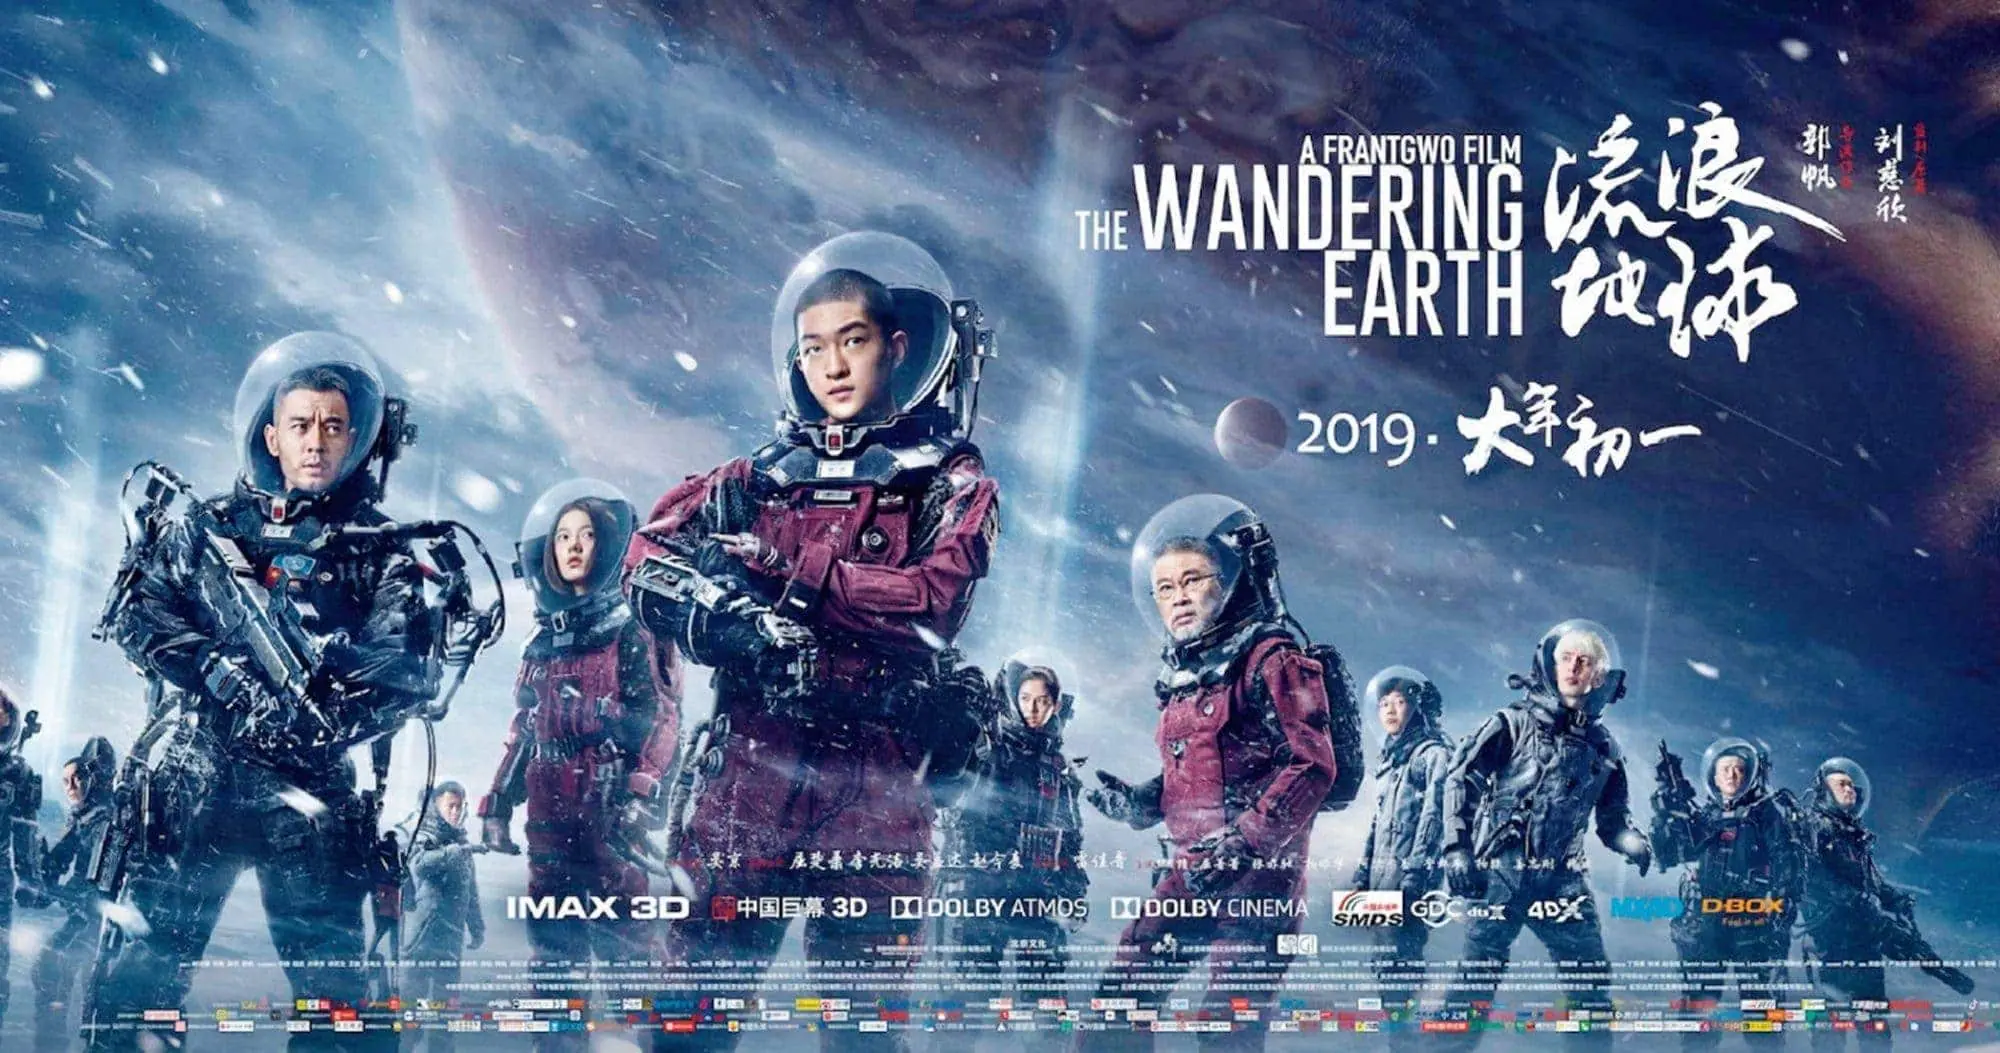 The Wandering Earth | หนังไซไฟฟอร์มยักษ์จากจีน ที่จะมาเทียบชั้นหนังฮอลลีวู้ด 1